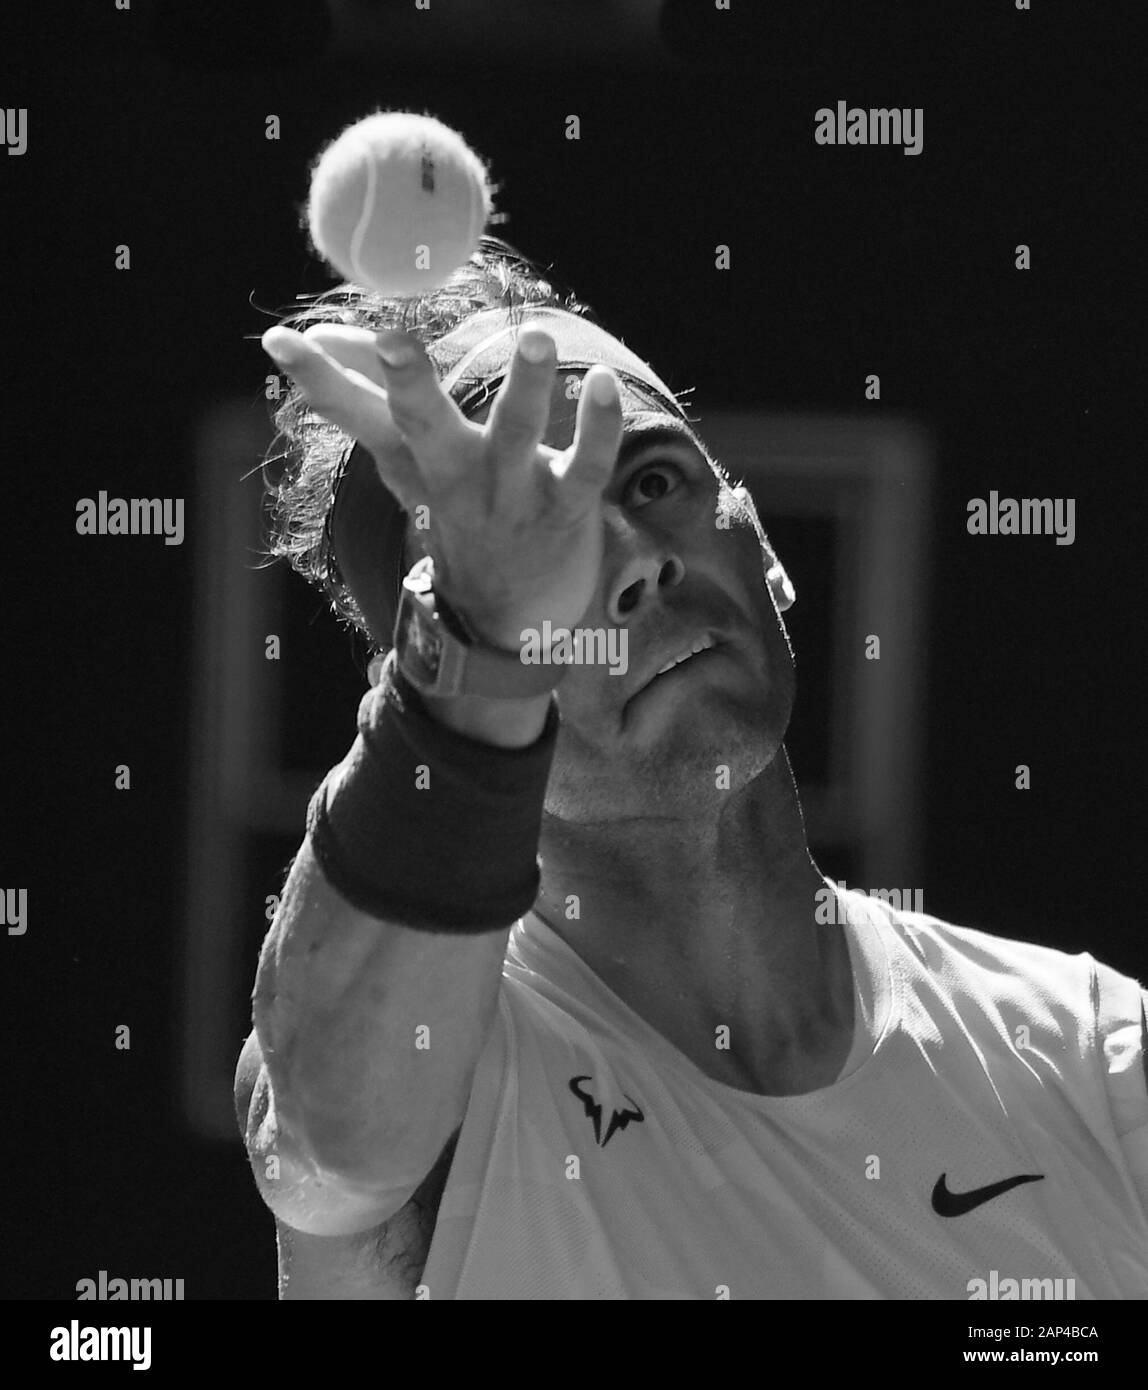 Melbourne, Australien. Januar 2020. Melbourne, Australien. Januar 2020. Melbourne Park Australian Open Day 2 21/01/2020 Rafa Nadal (ESP) gewinnt erste Runde Match Credit: Roger Parker/Alamy Live News Stockfoto